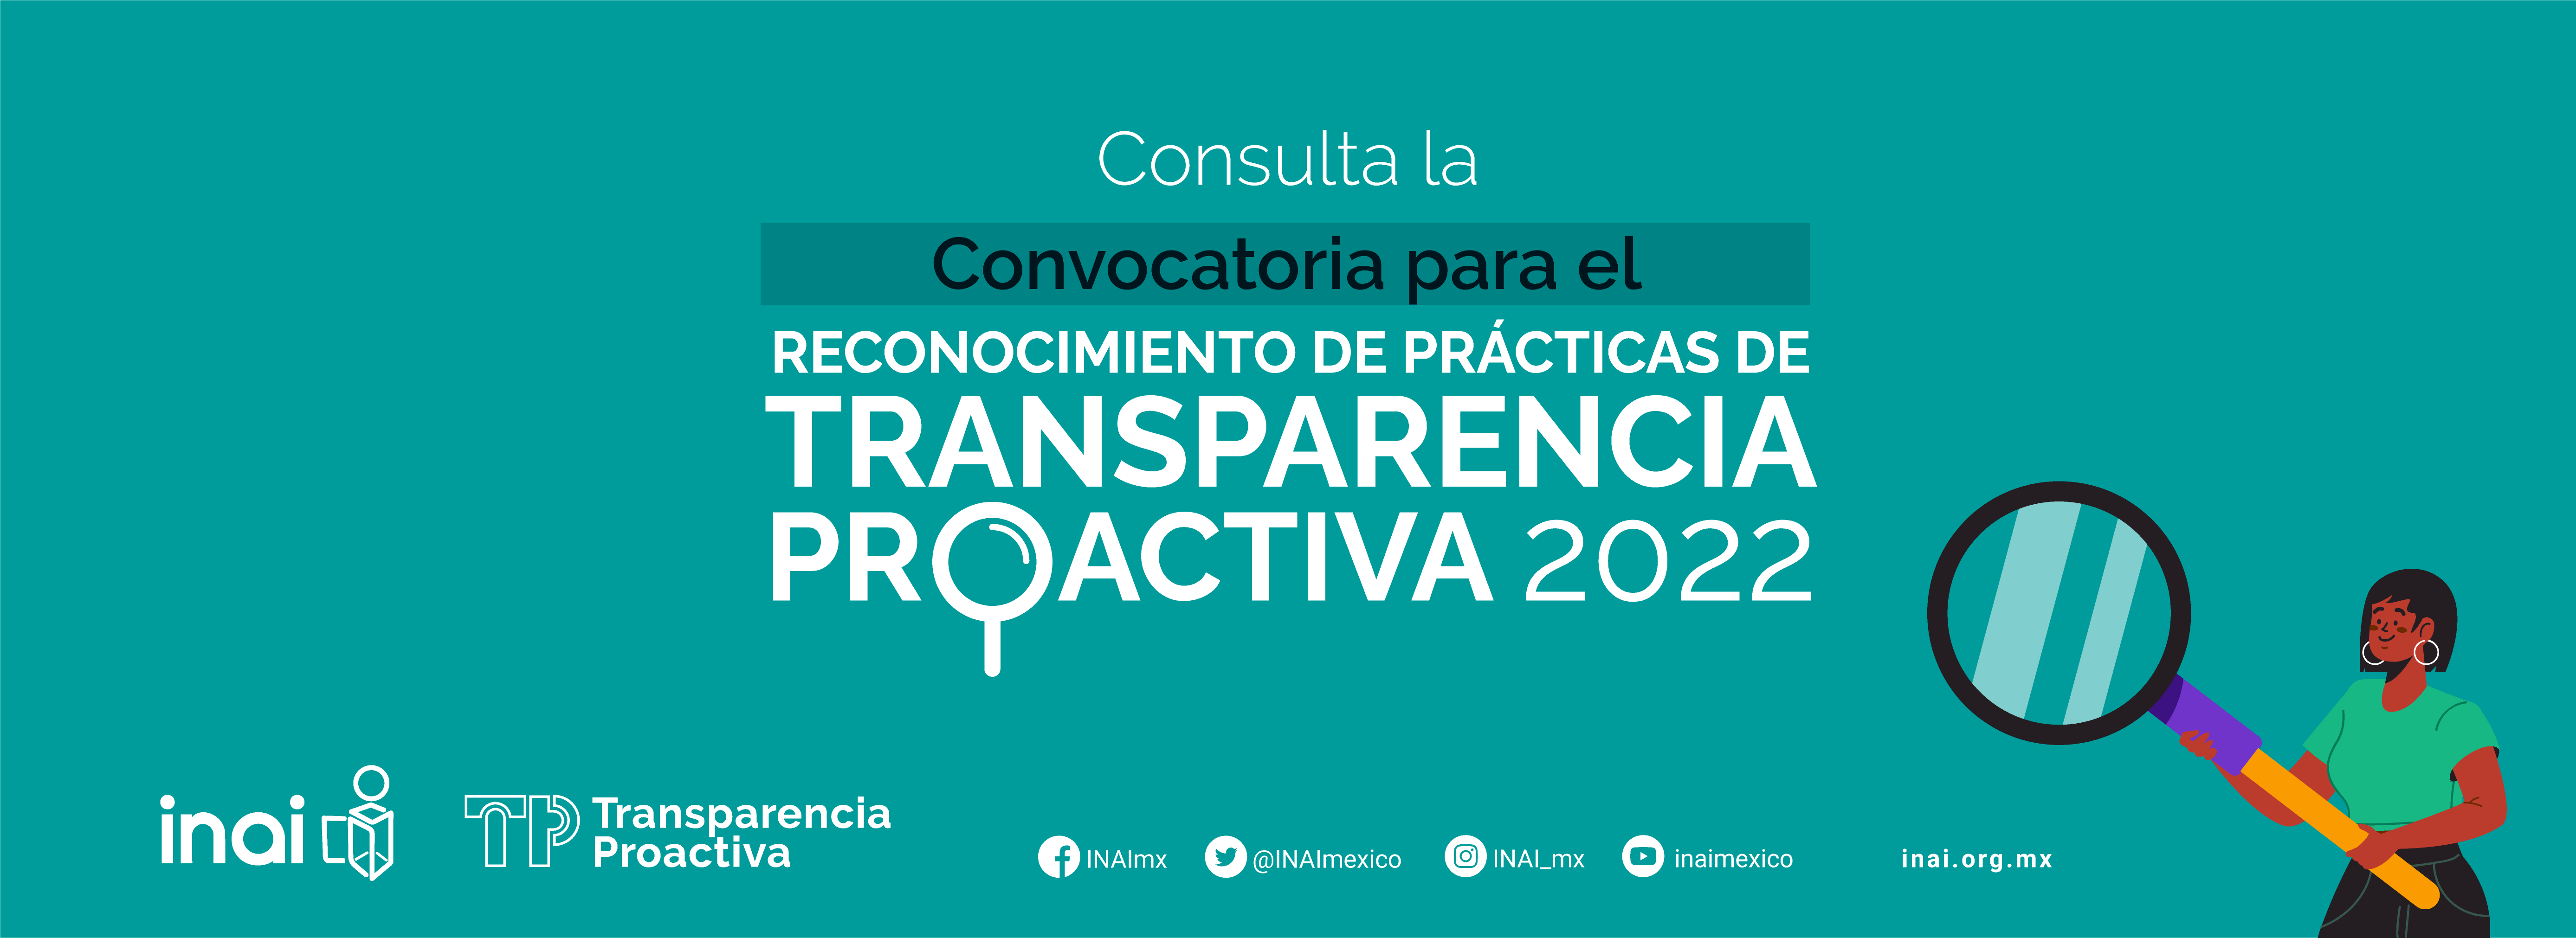 Consulta la convocatoria para el reconocimiento de Prácticas de Transparencia Proactiva